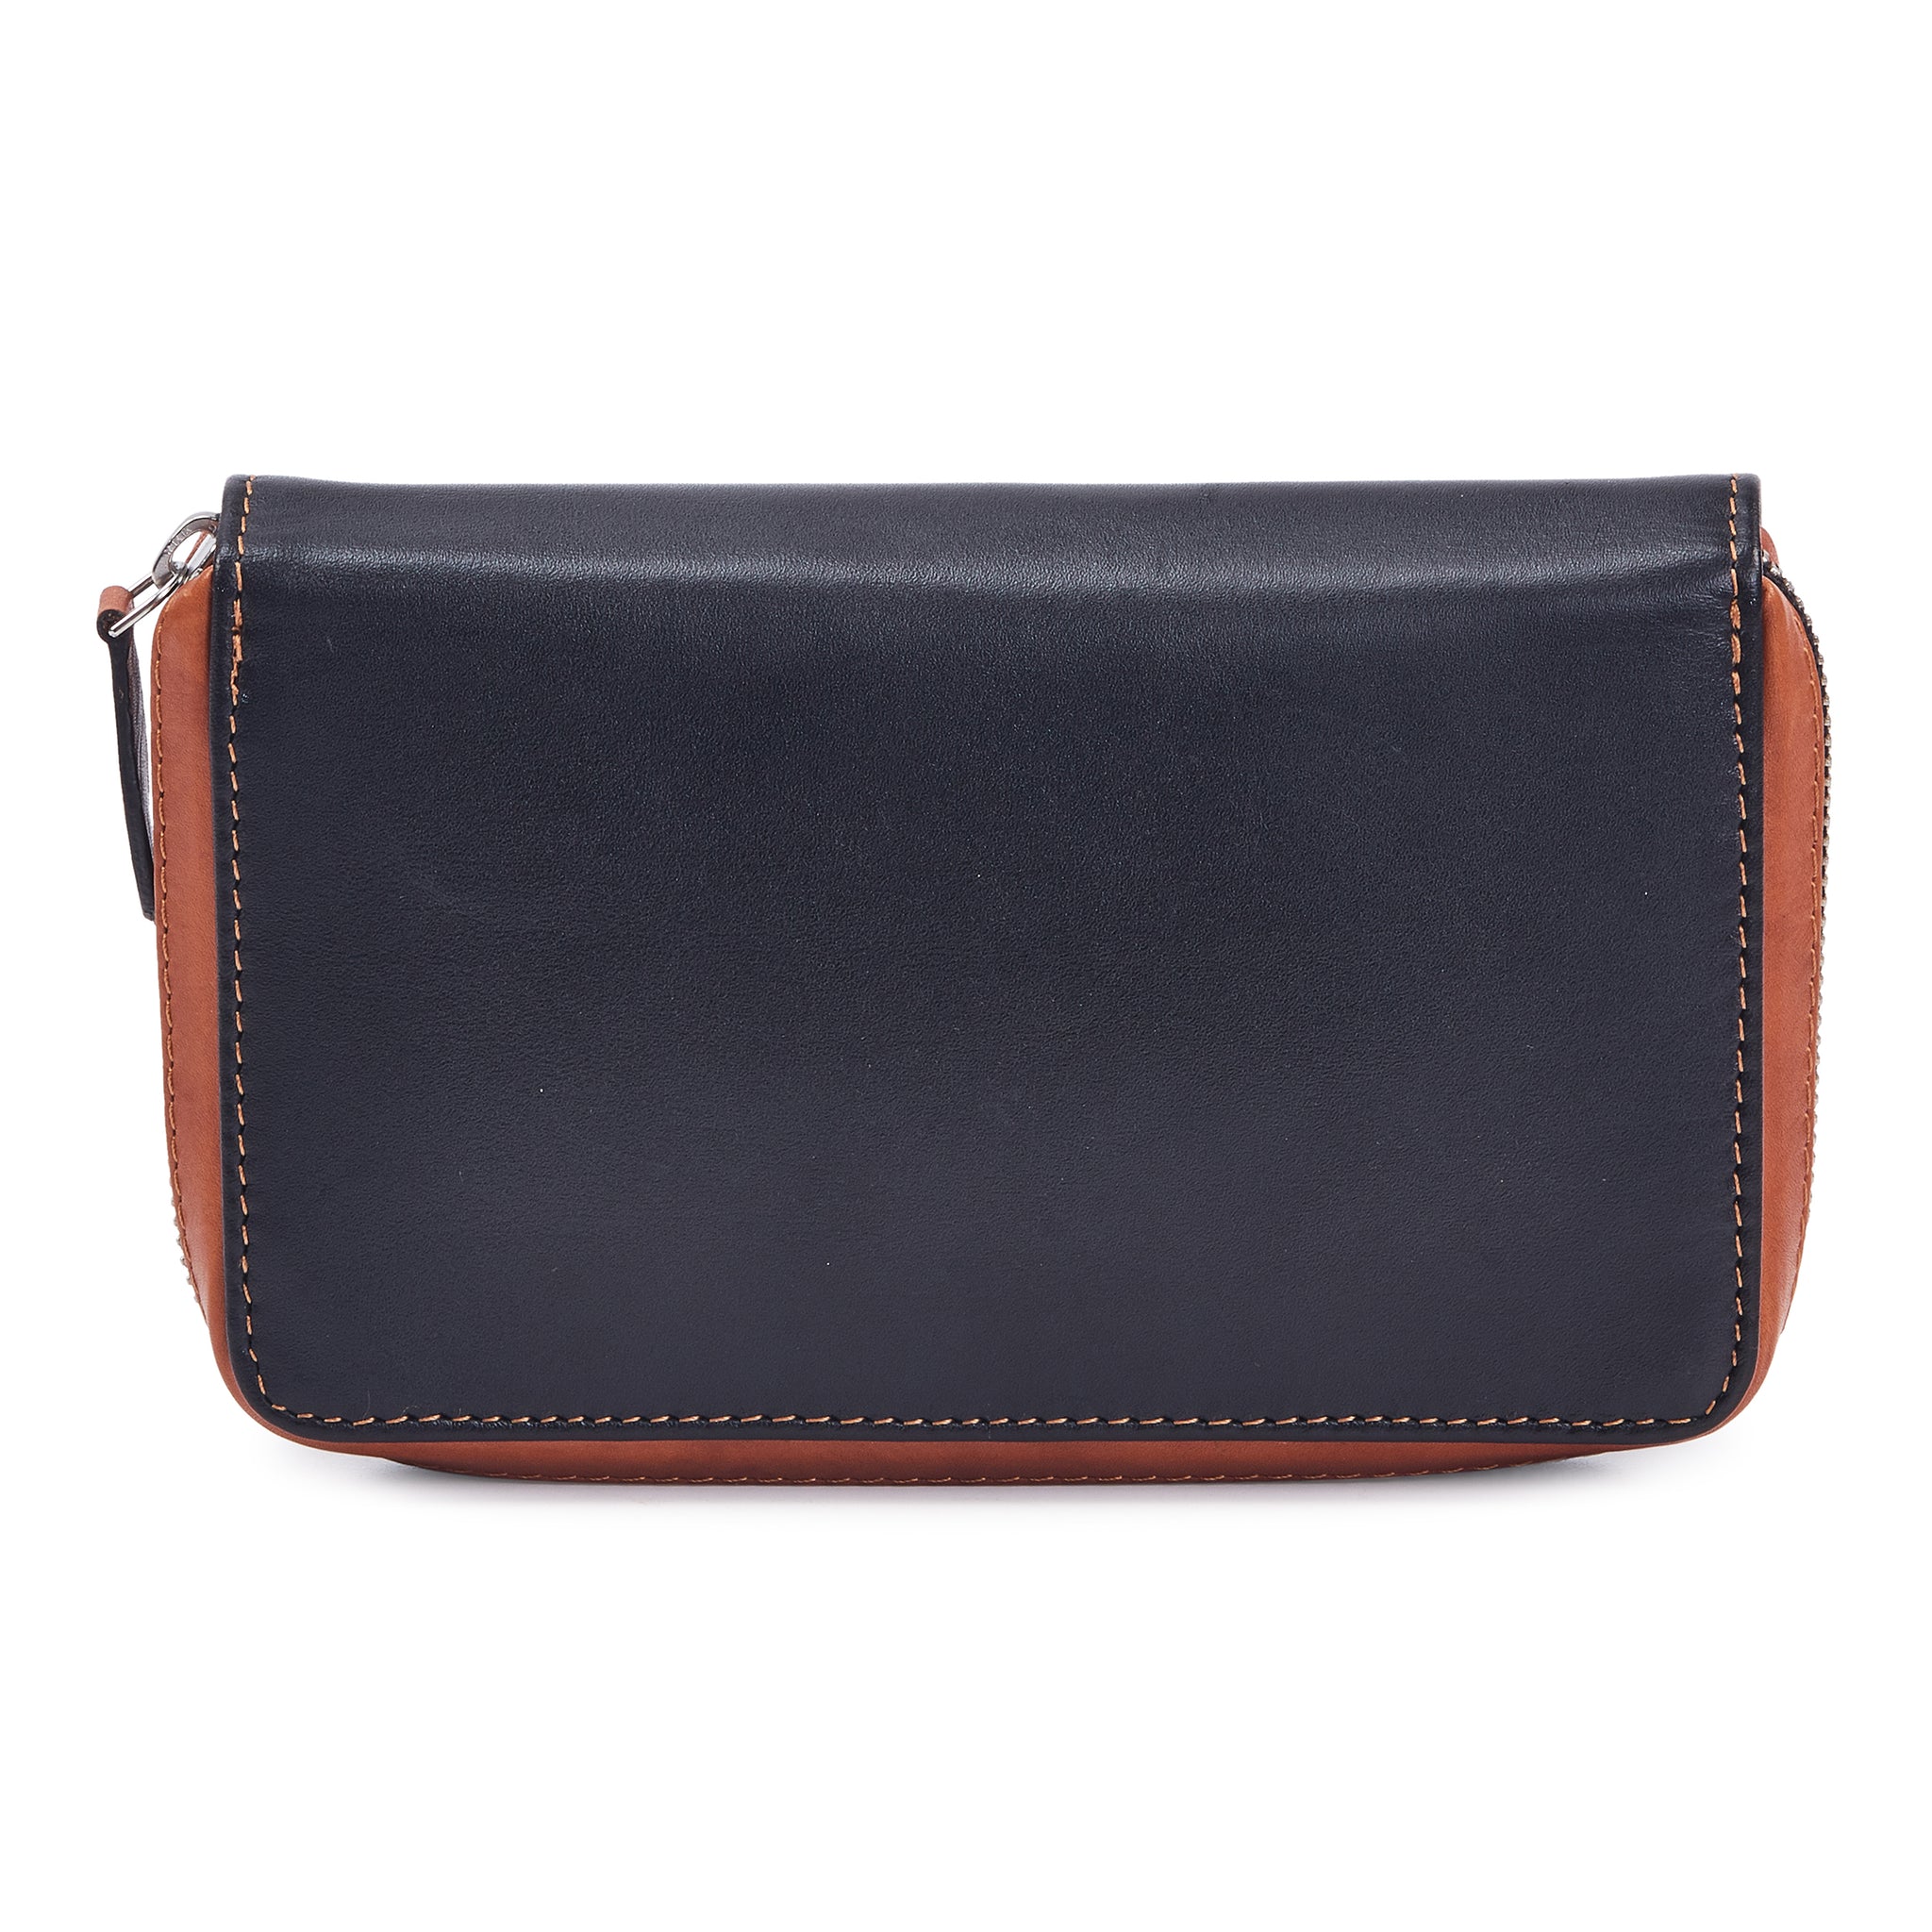 ELK Leather Goods - Shelter - Small Handbag Bag Purse: NWT | Small handbags,  Purses and bags, Handbag